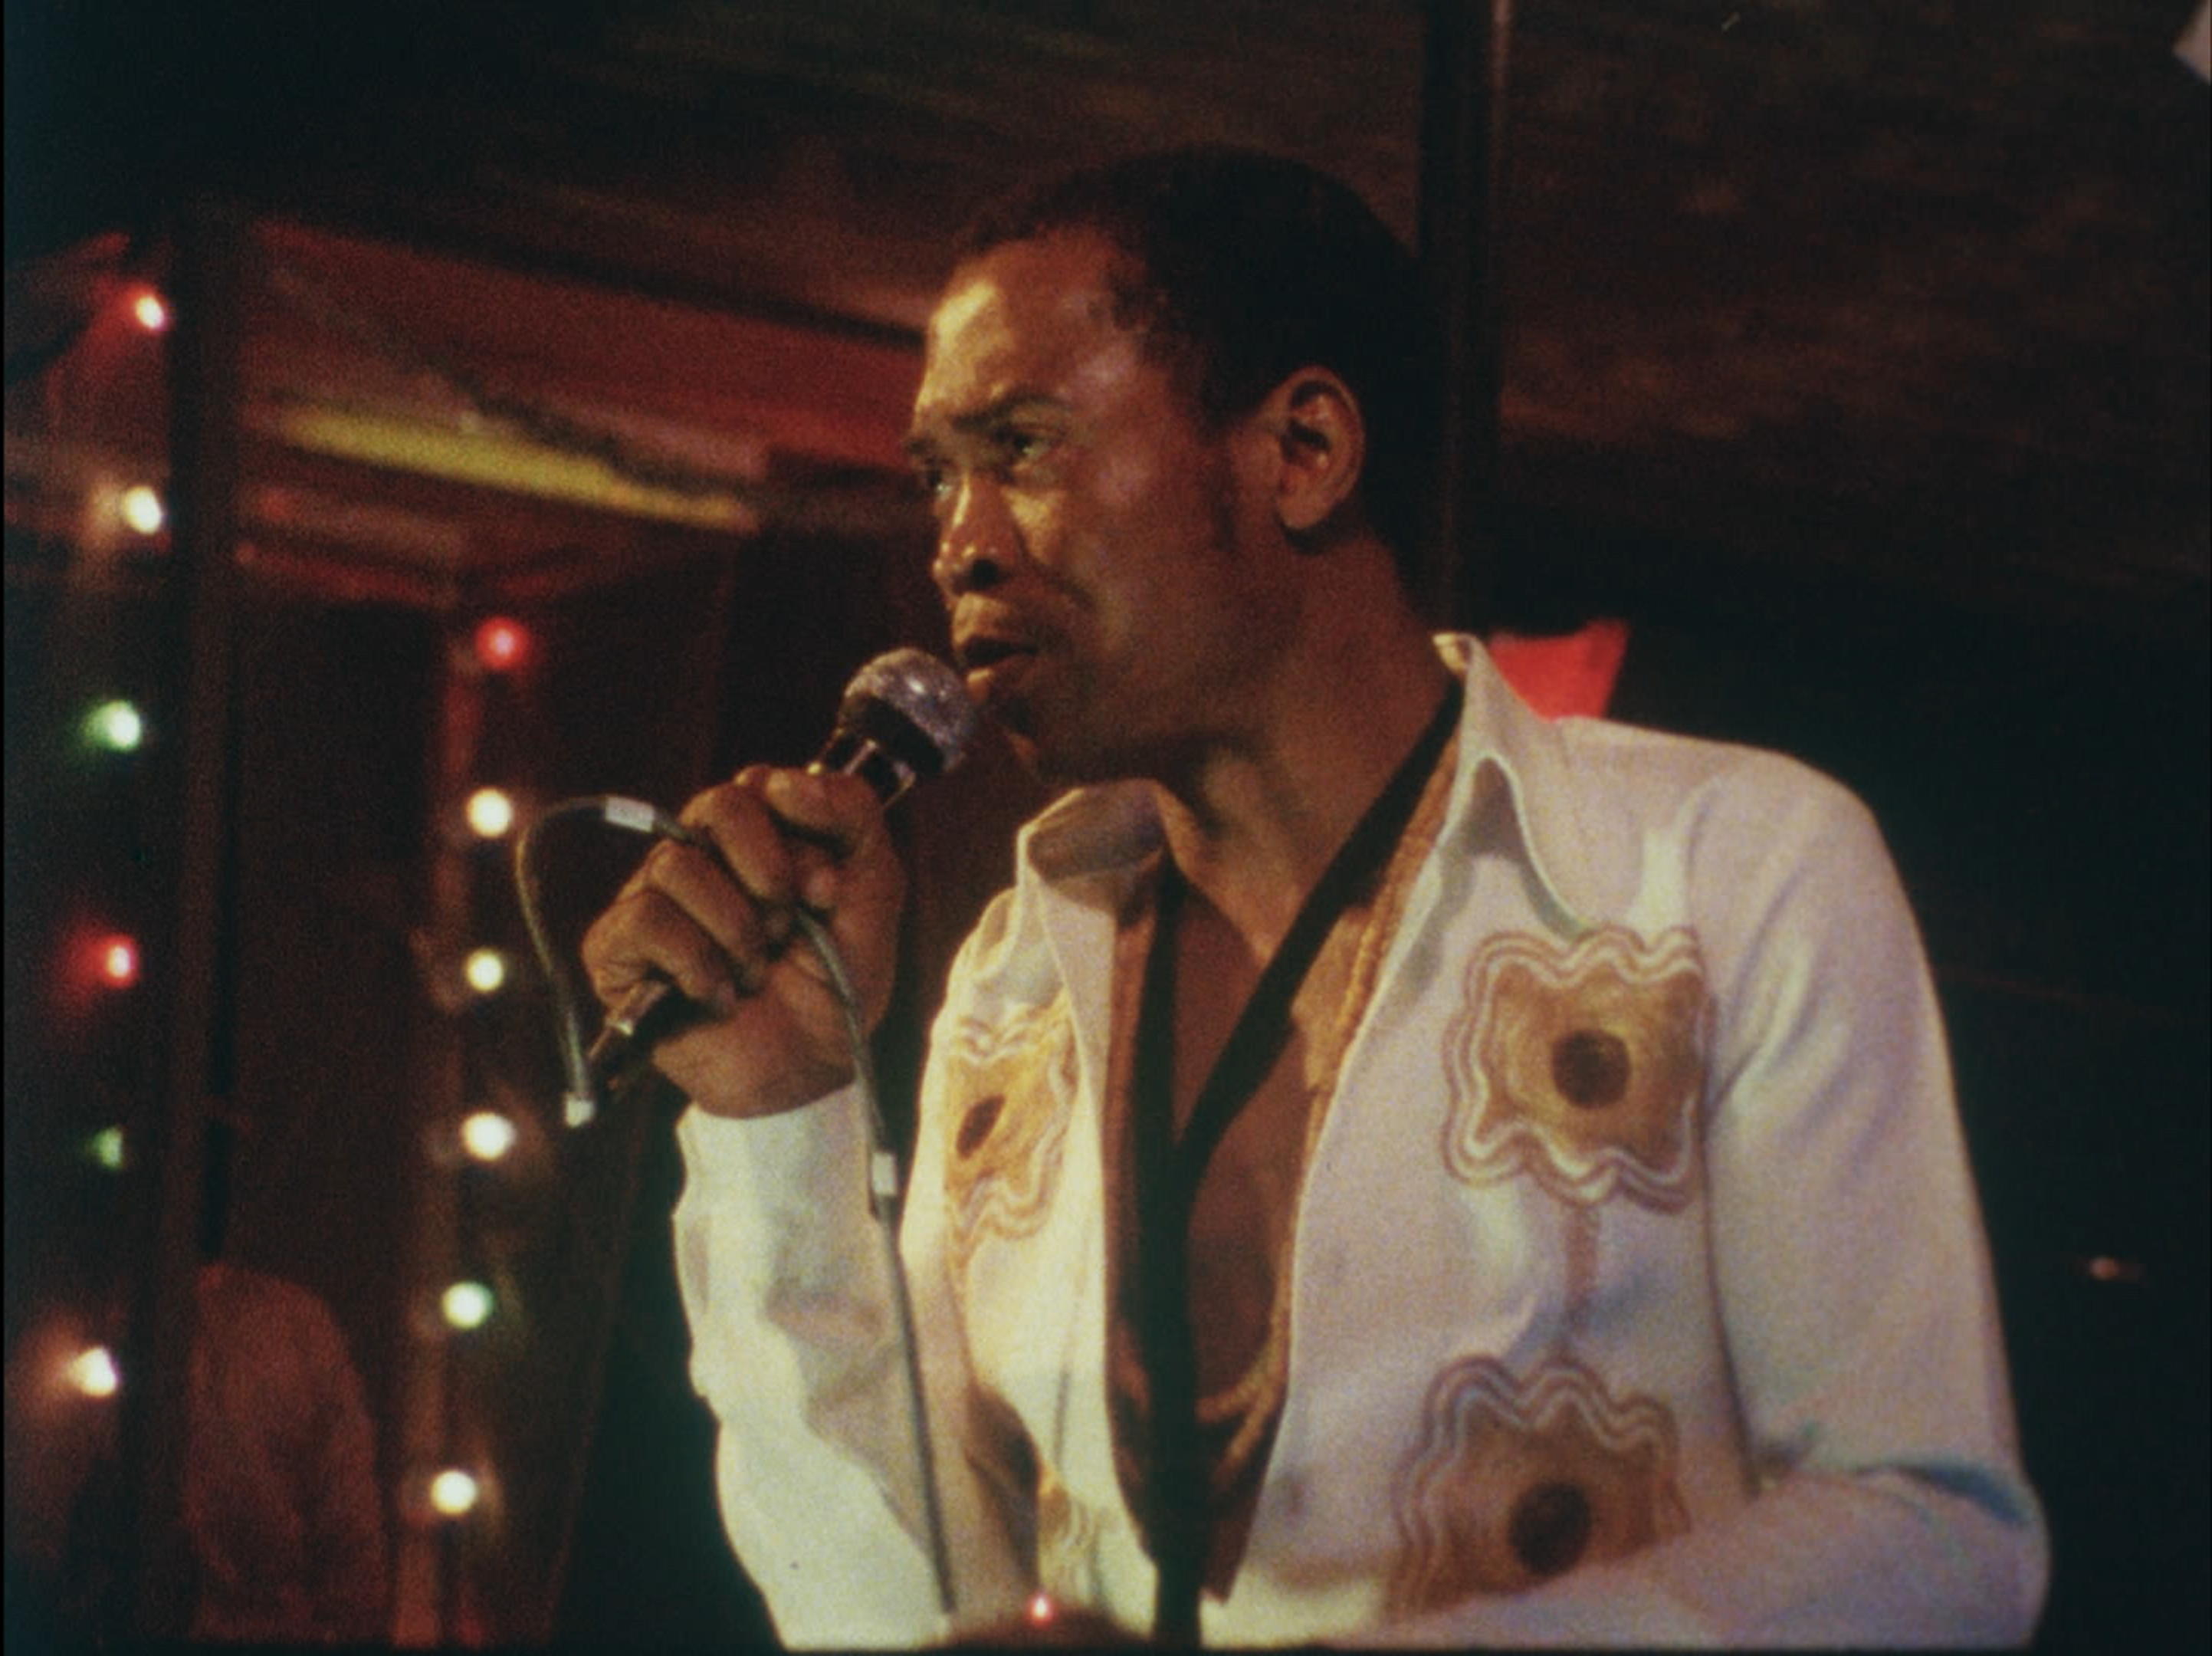 Fela performing in 1983.